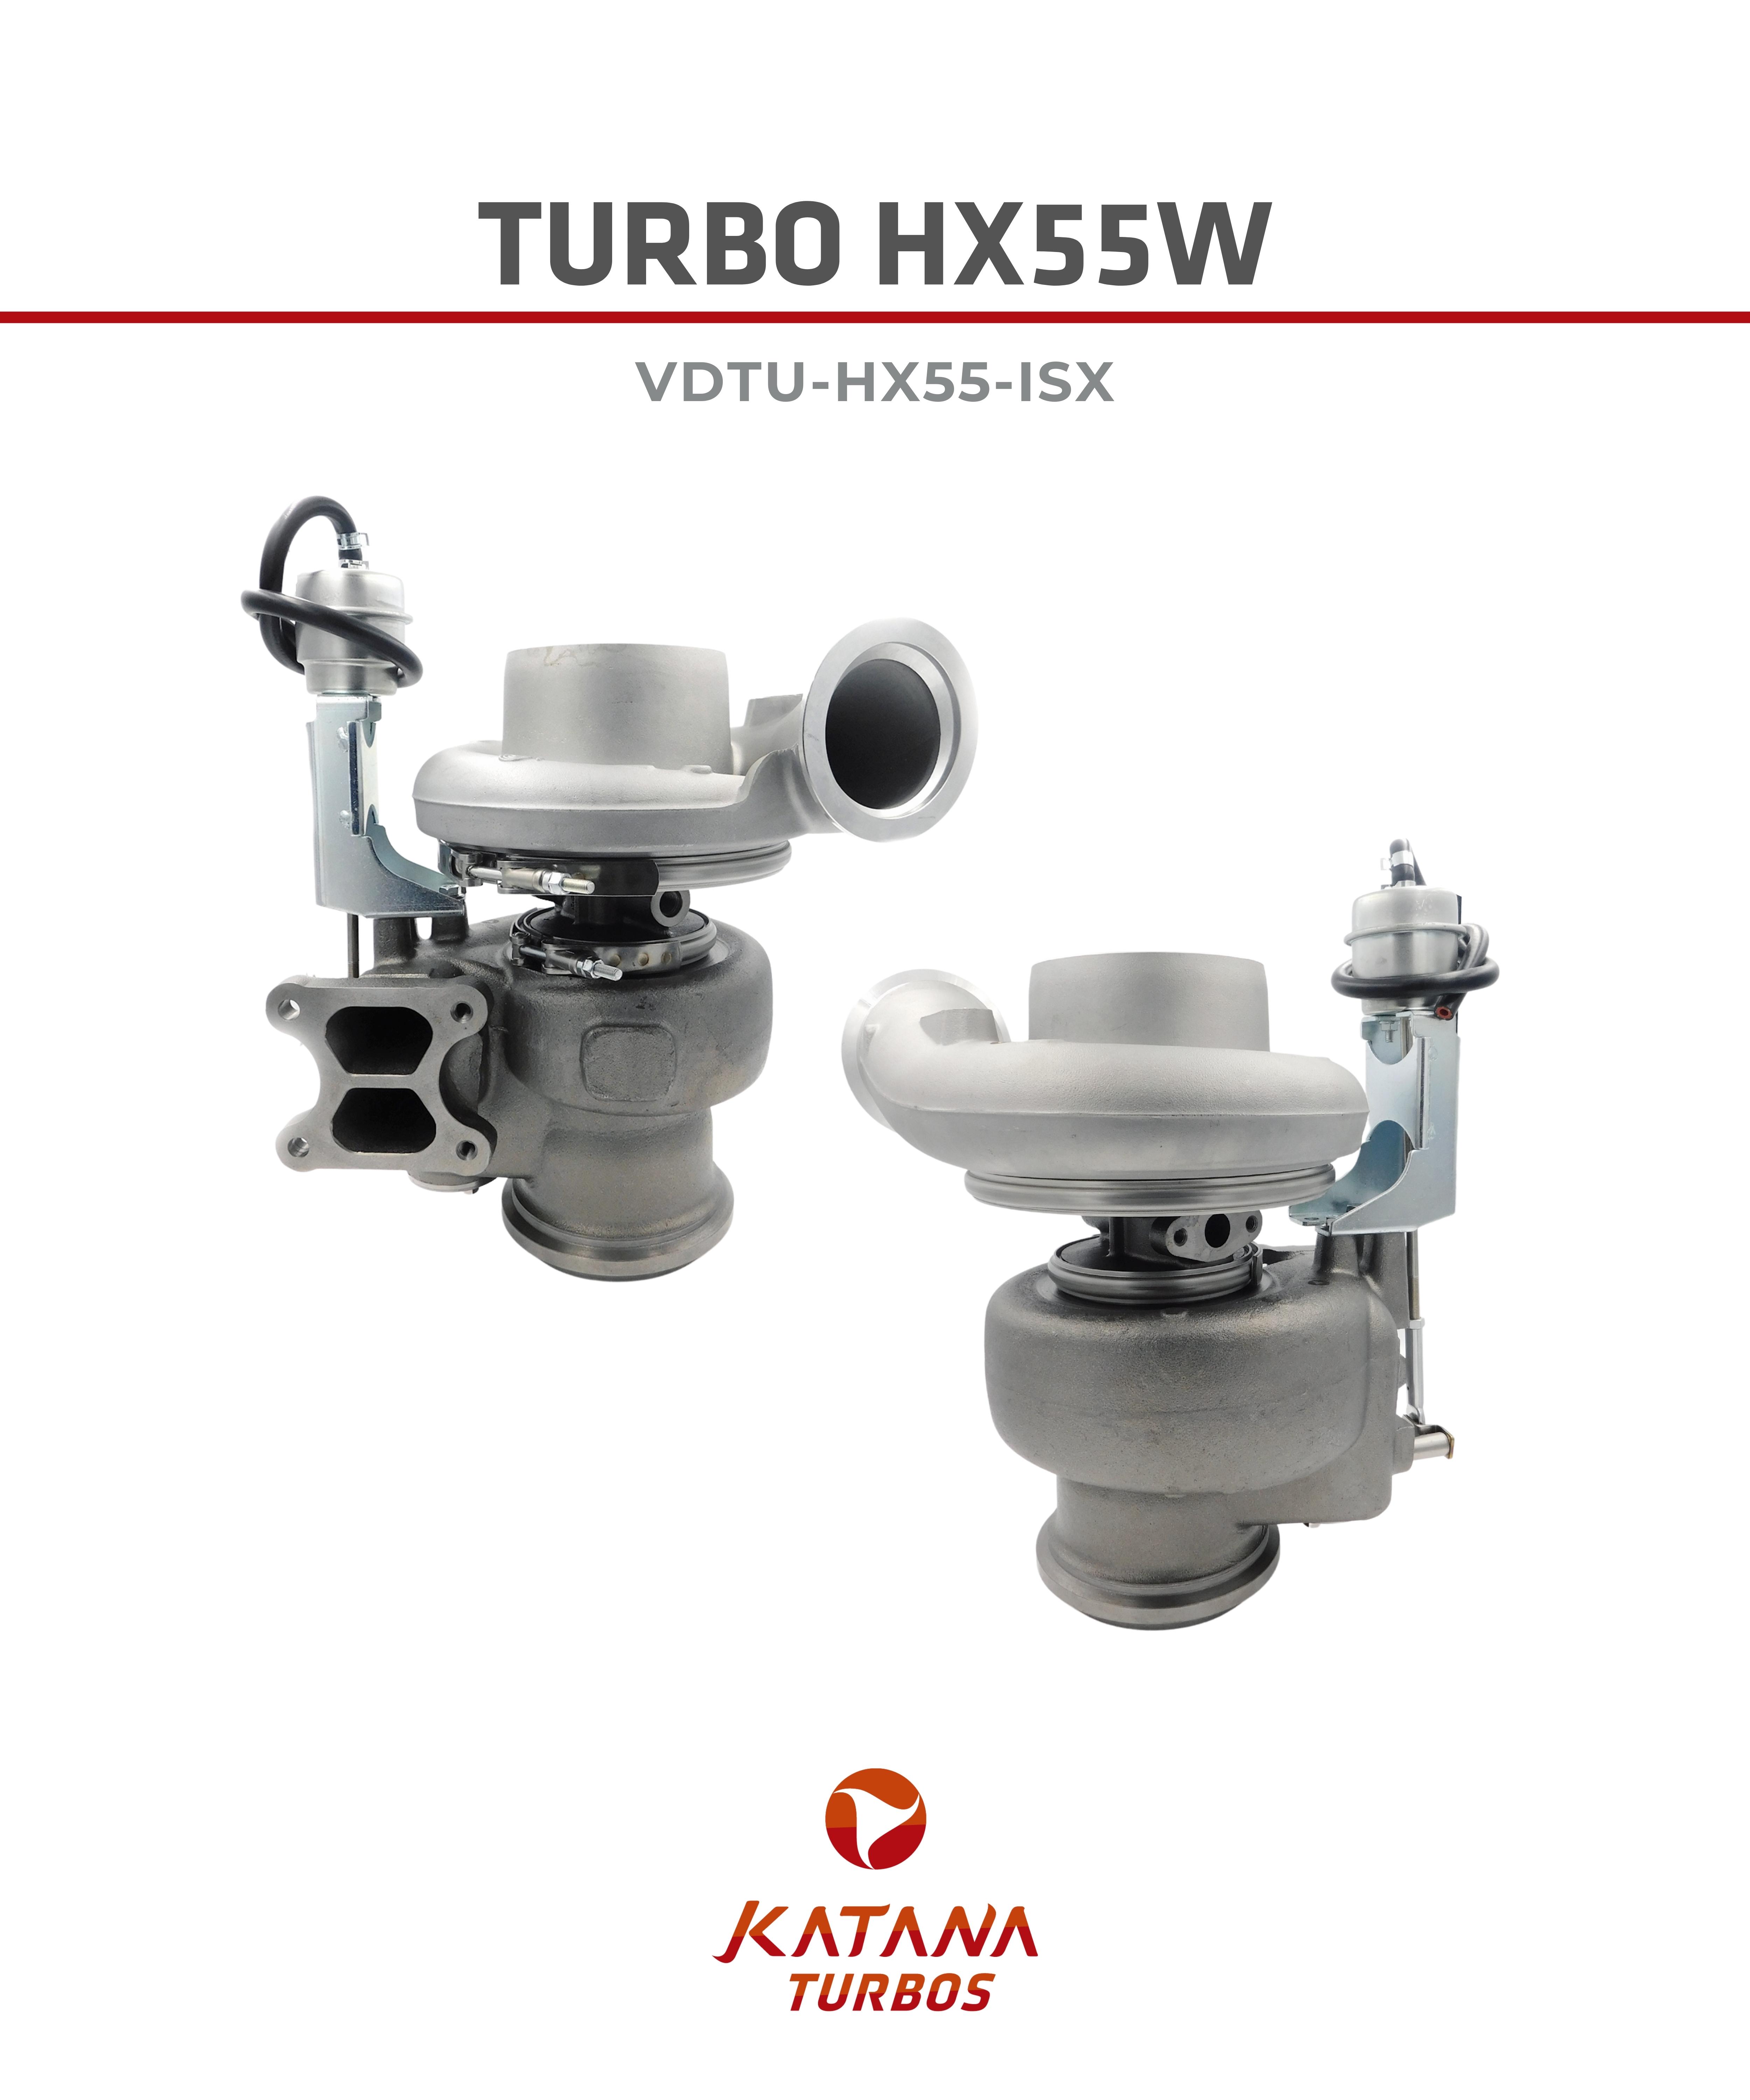 Turbo HX55W